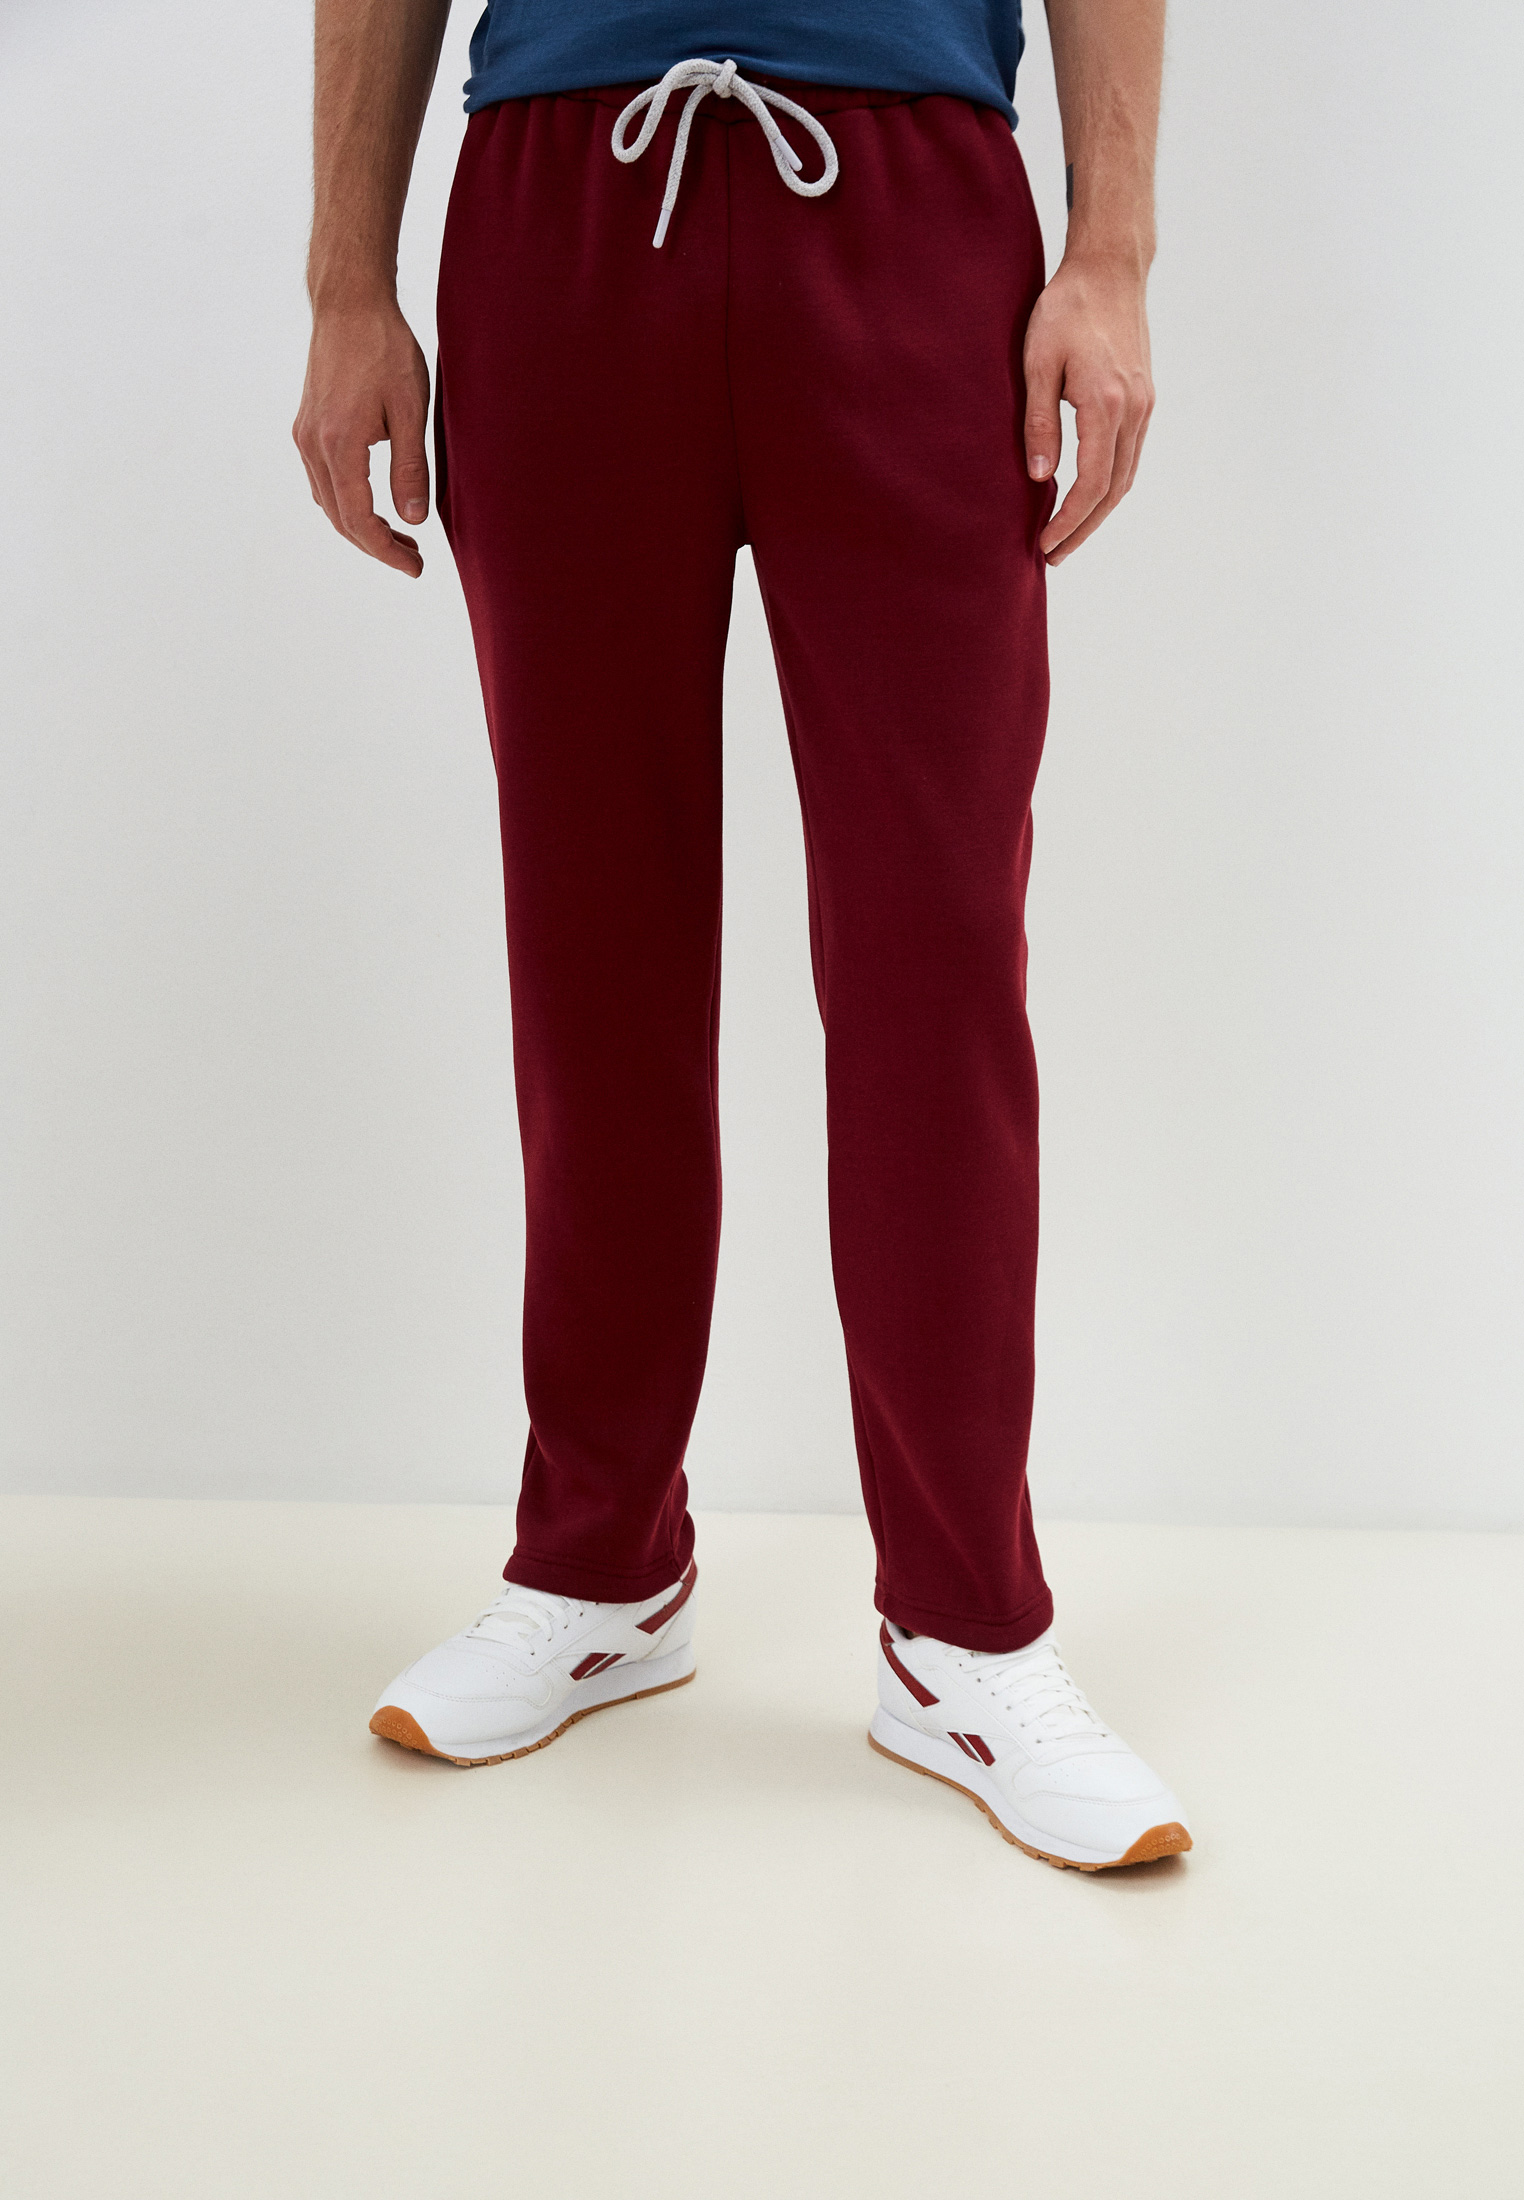 Спортивные брюки мужские BLACKSI 5215 бордовые XL